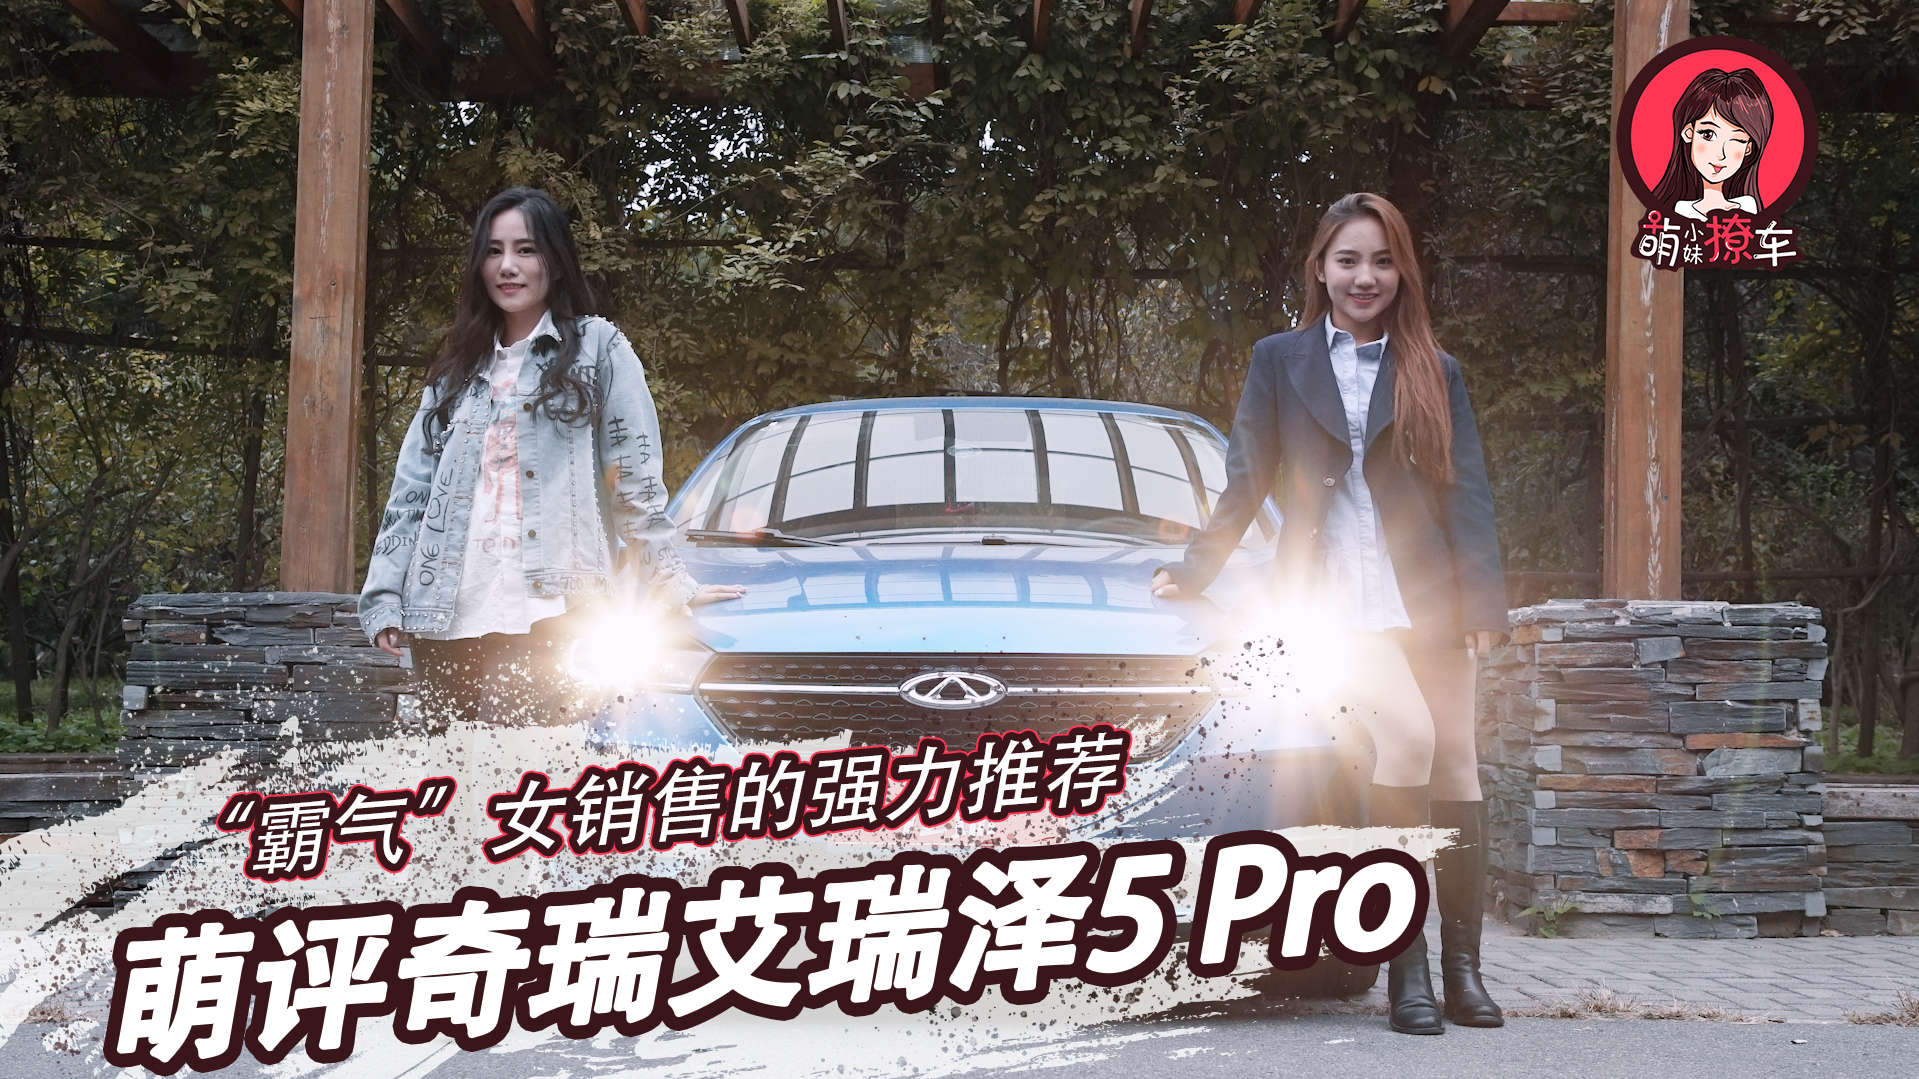 【视频】“霸气”女销售的强力推荐 萌评奇瑞艾瑞泽5 Pro